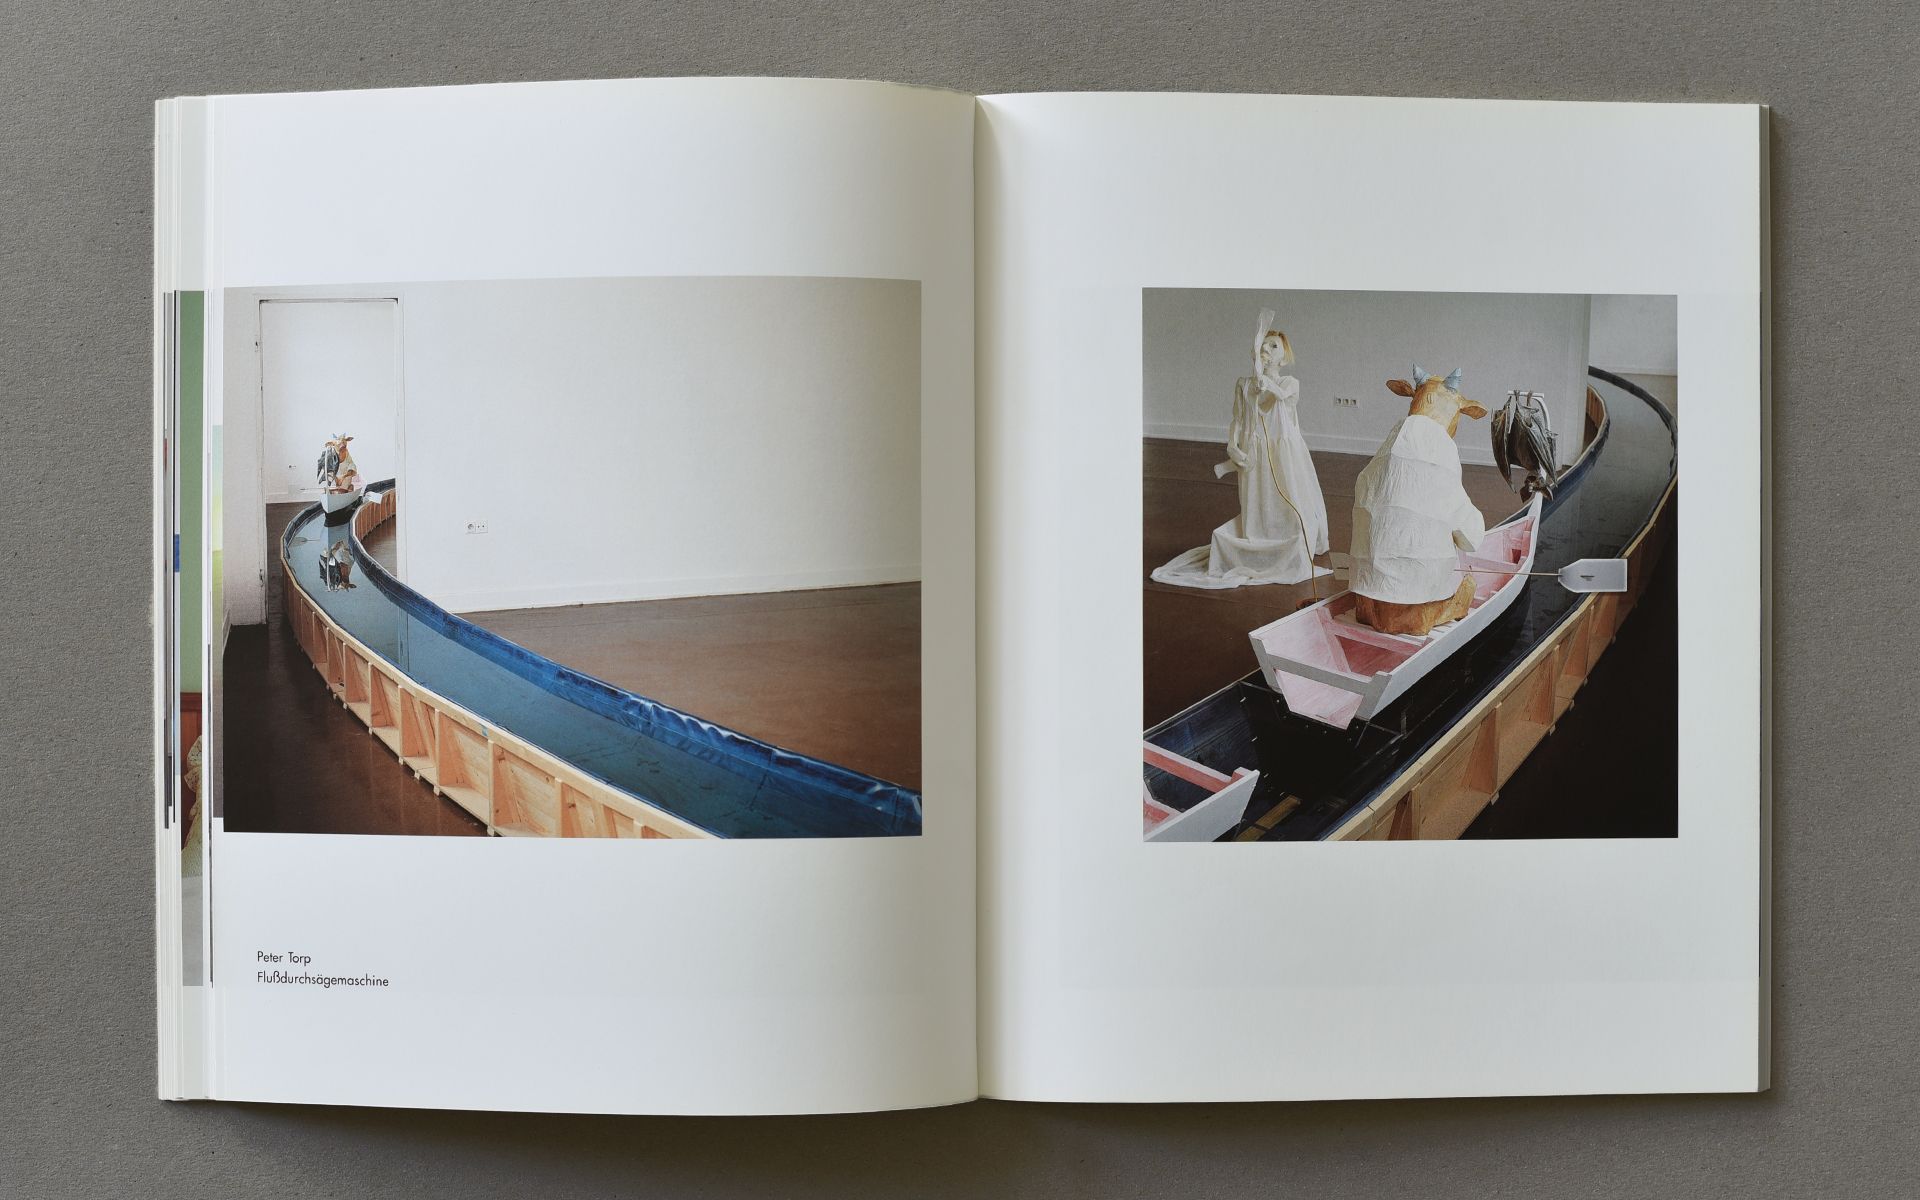 Katalog Galerie im Kunsthaus Essen 1998 – 2000